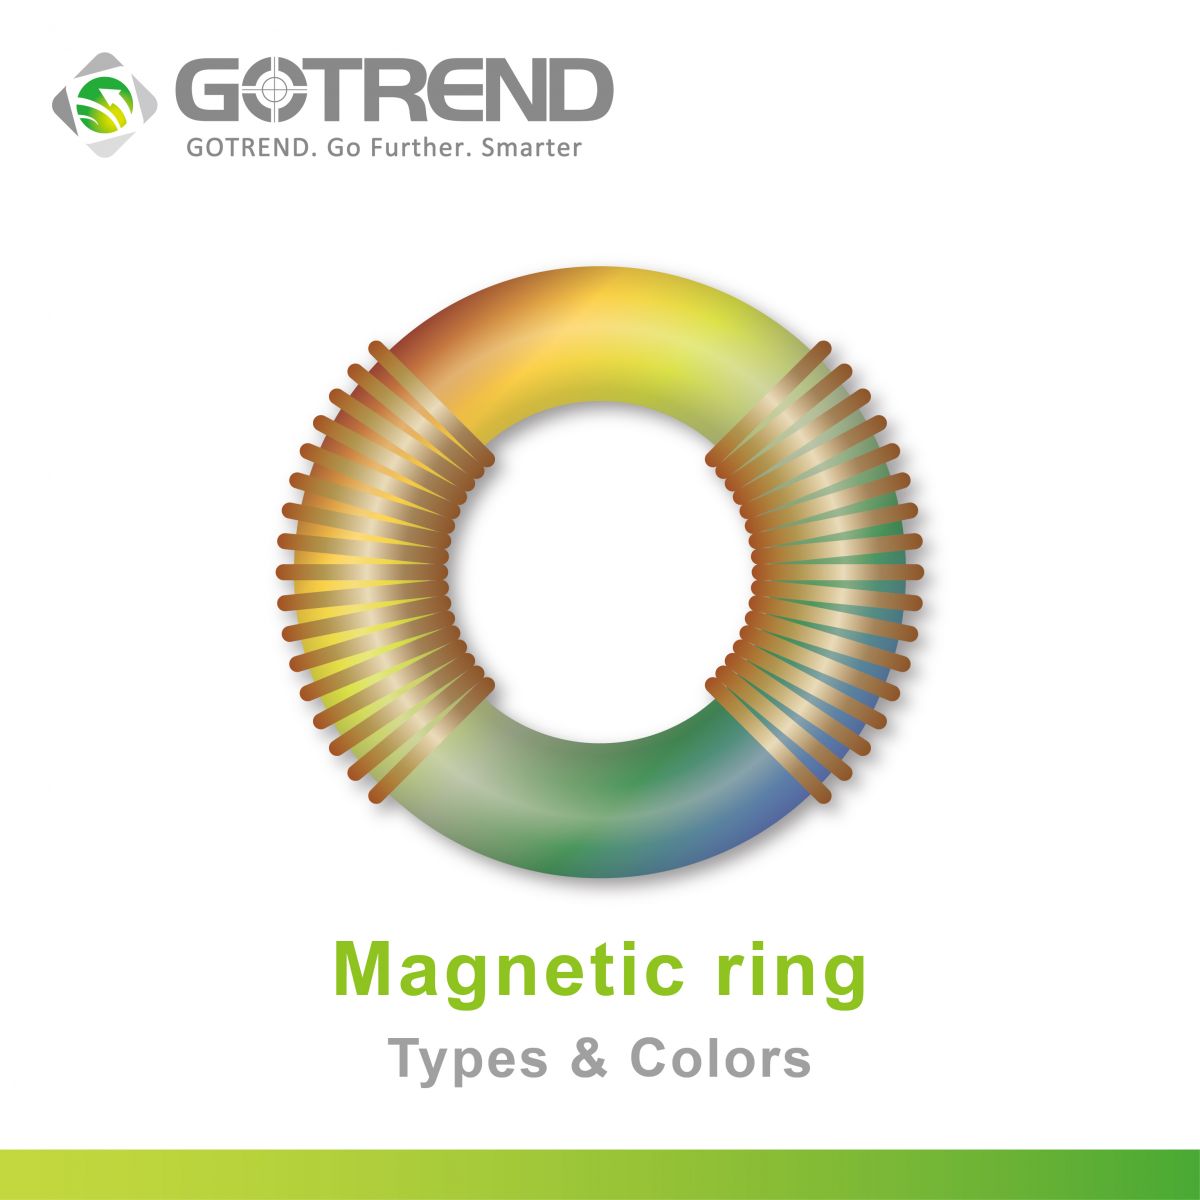 電感器磁環的顏色代表什麼意思？